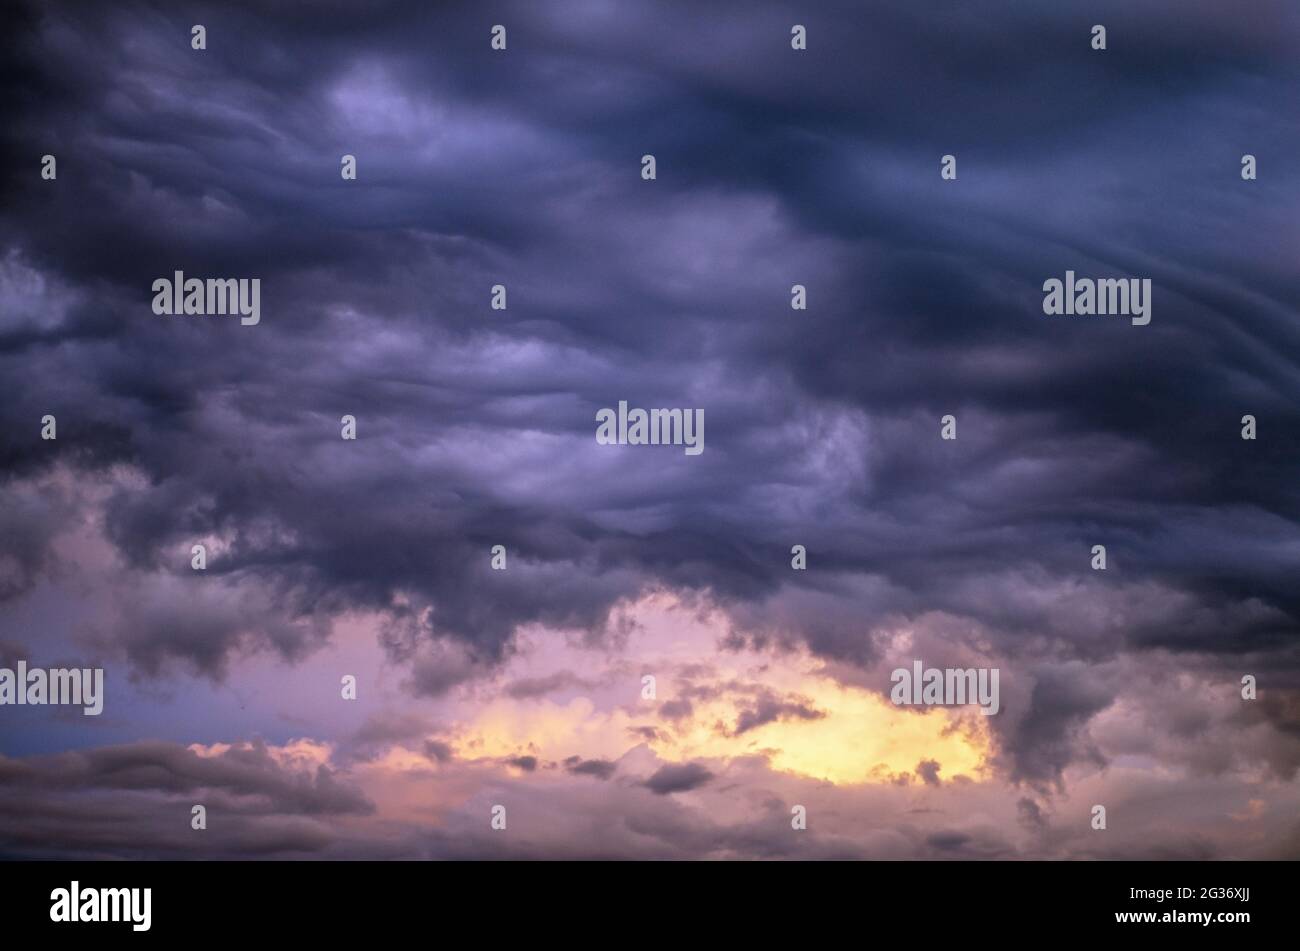 Sunset sky with heavy clouds-altocumulus undulatus asperitas.cloudy landscape Stock Photo